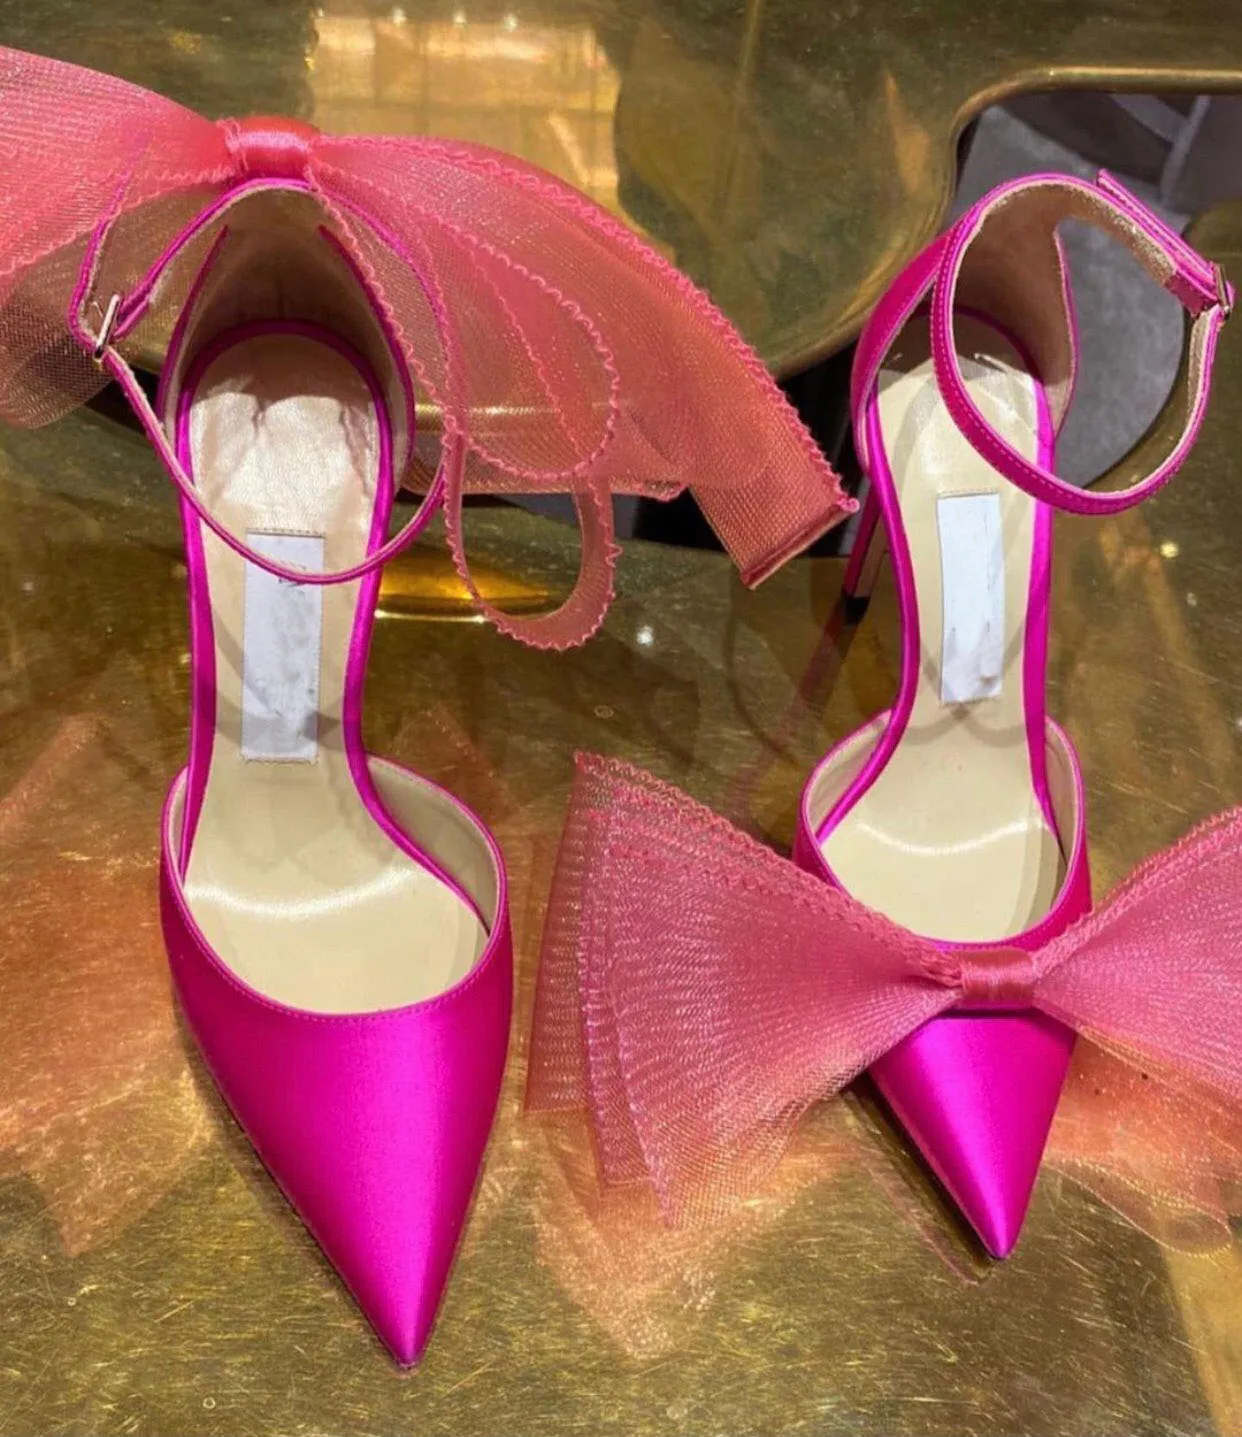 Romantik Düğün Gelin Aveline Sandalet Ayakkabı Seksi Kadınlar Yüksek Topuklu Örgü Yaylar Gladyatör Sandalias Averly Stiletto-Topuk Elbise, Akşam Bayan Pompalar